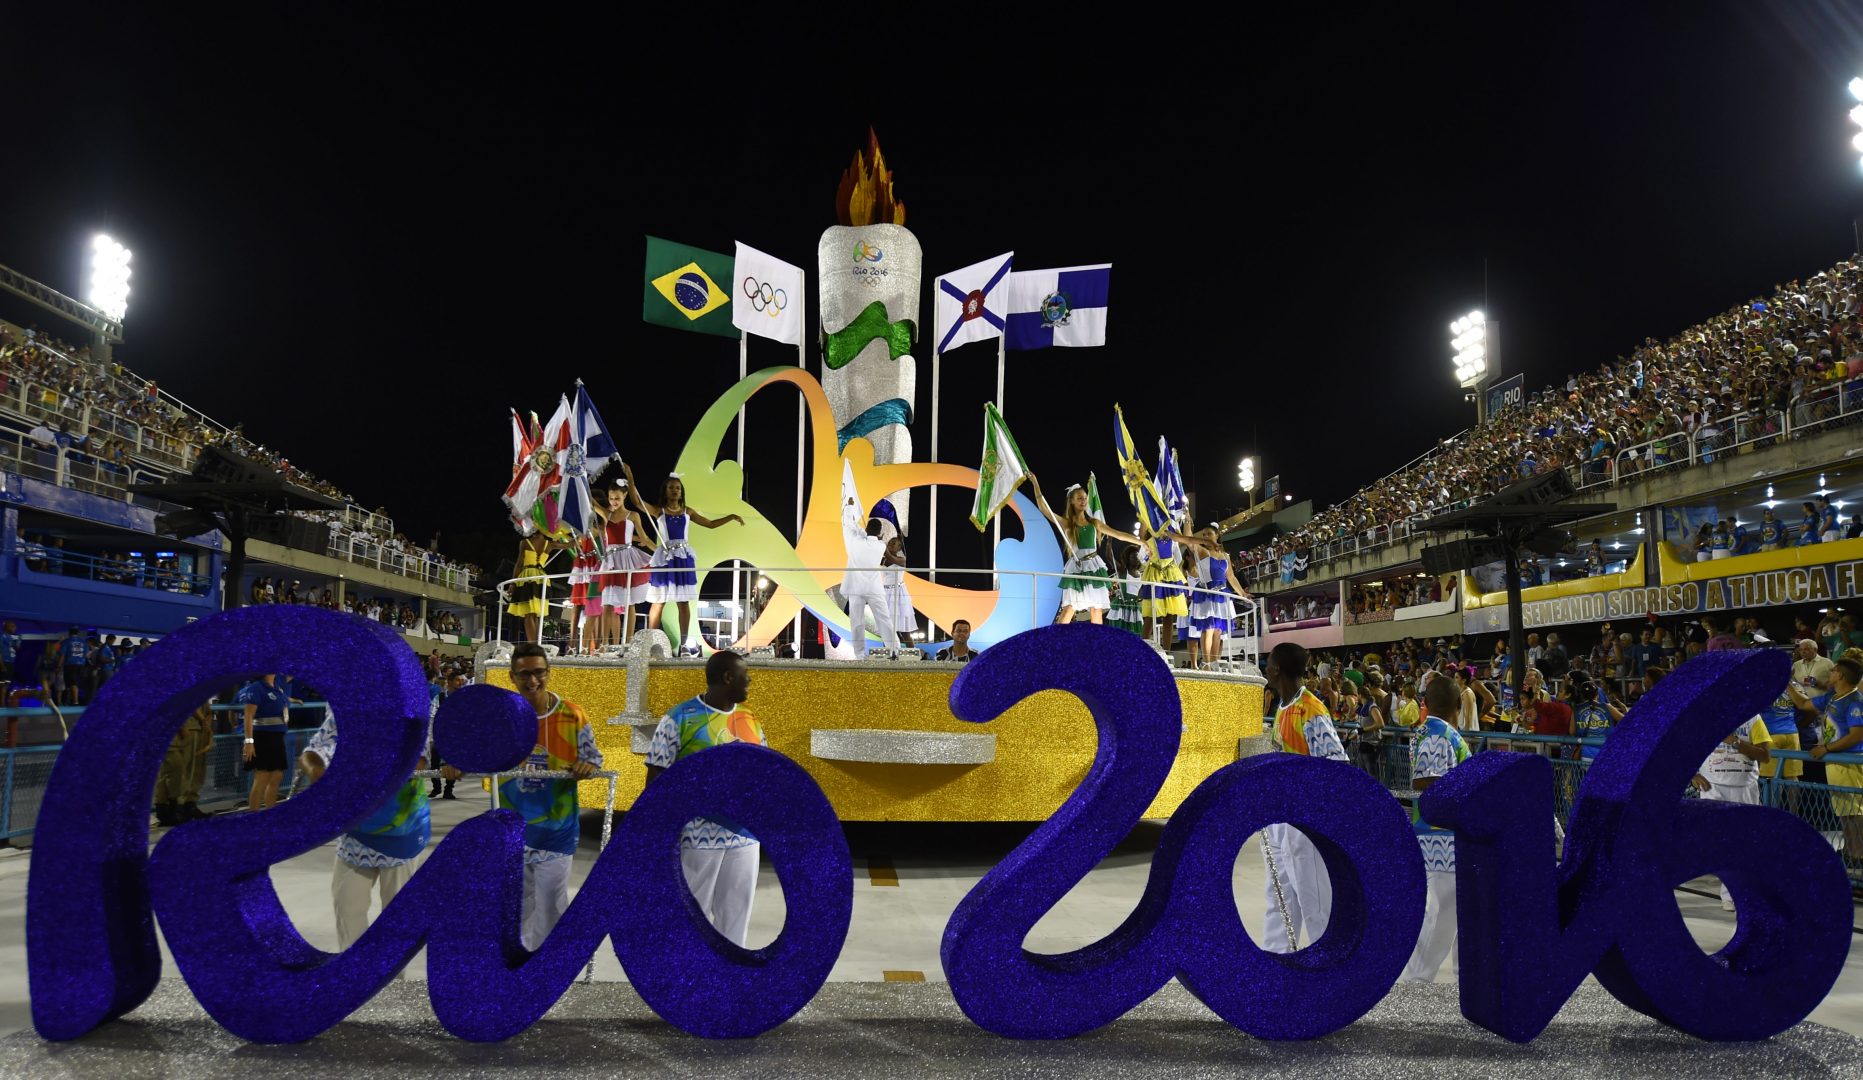 Олимпийские игры 2016 1. Олимпийские игры в Рио де Жанейро. Олимпийские объекты в Рио де Жанейро. Открытие Олимпийских игр в Рио де Жанейро 2016.